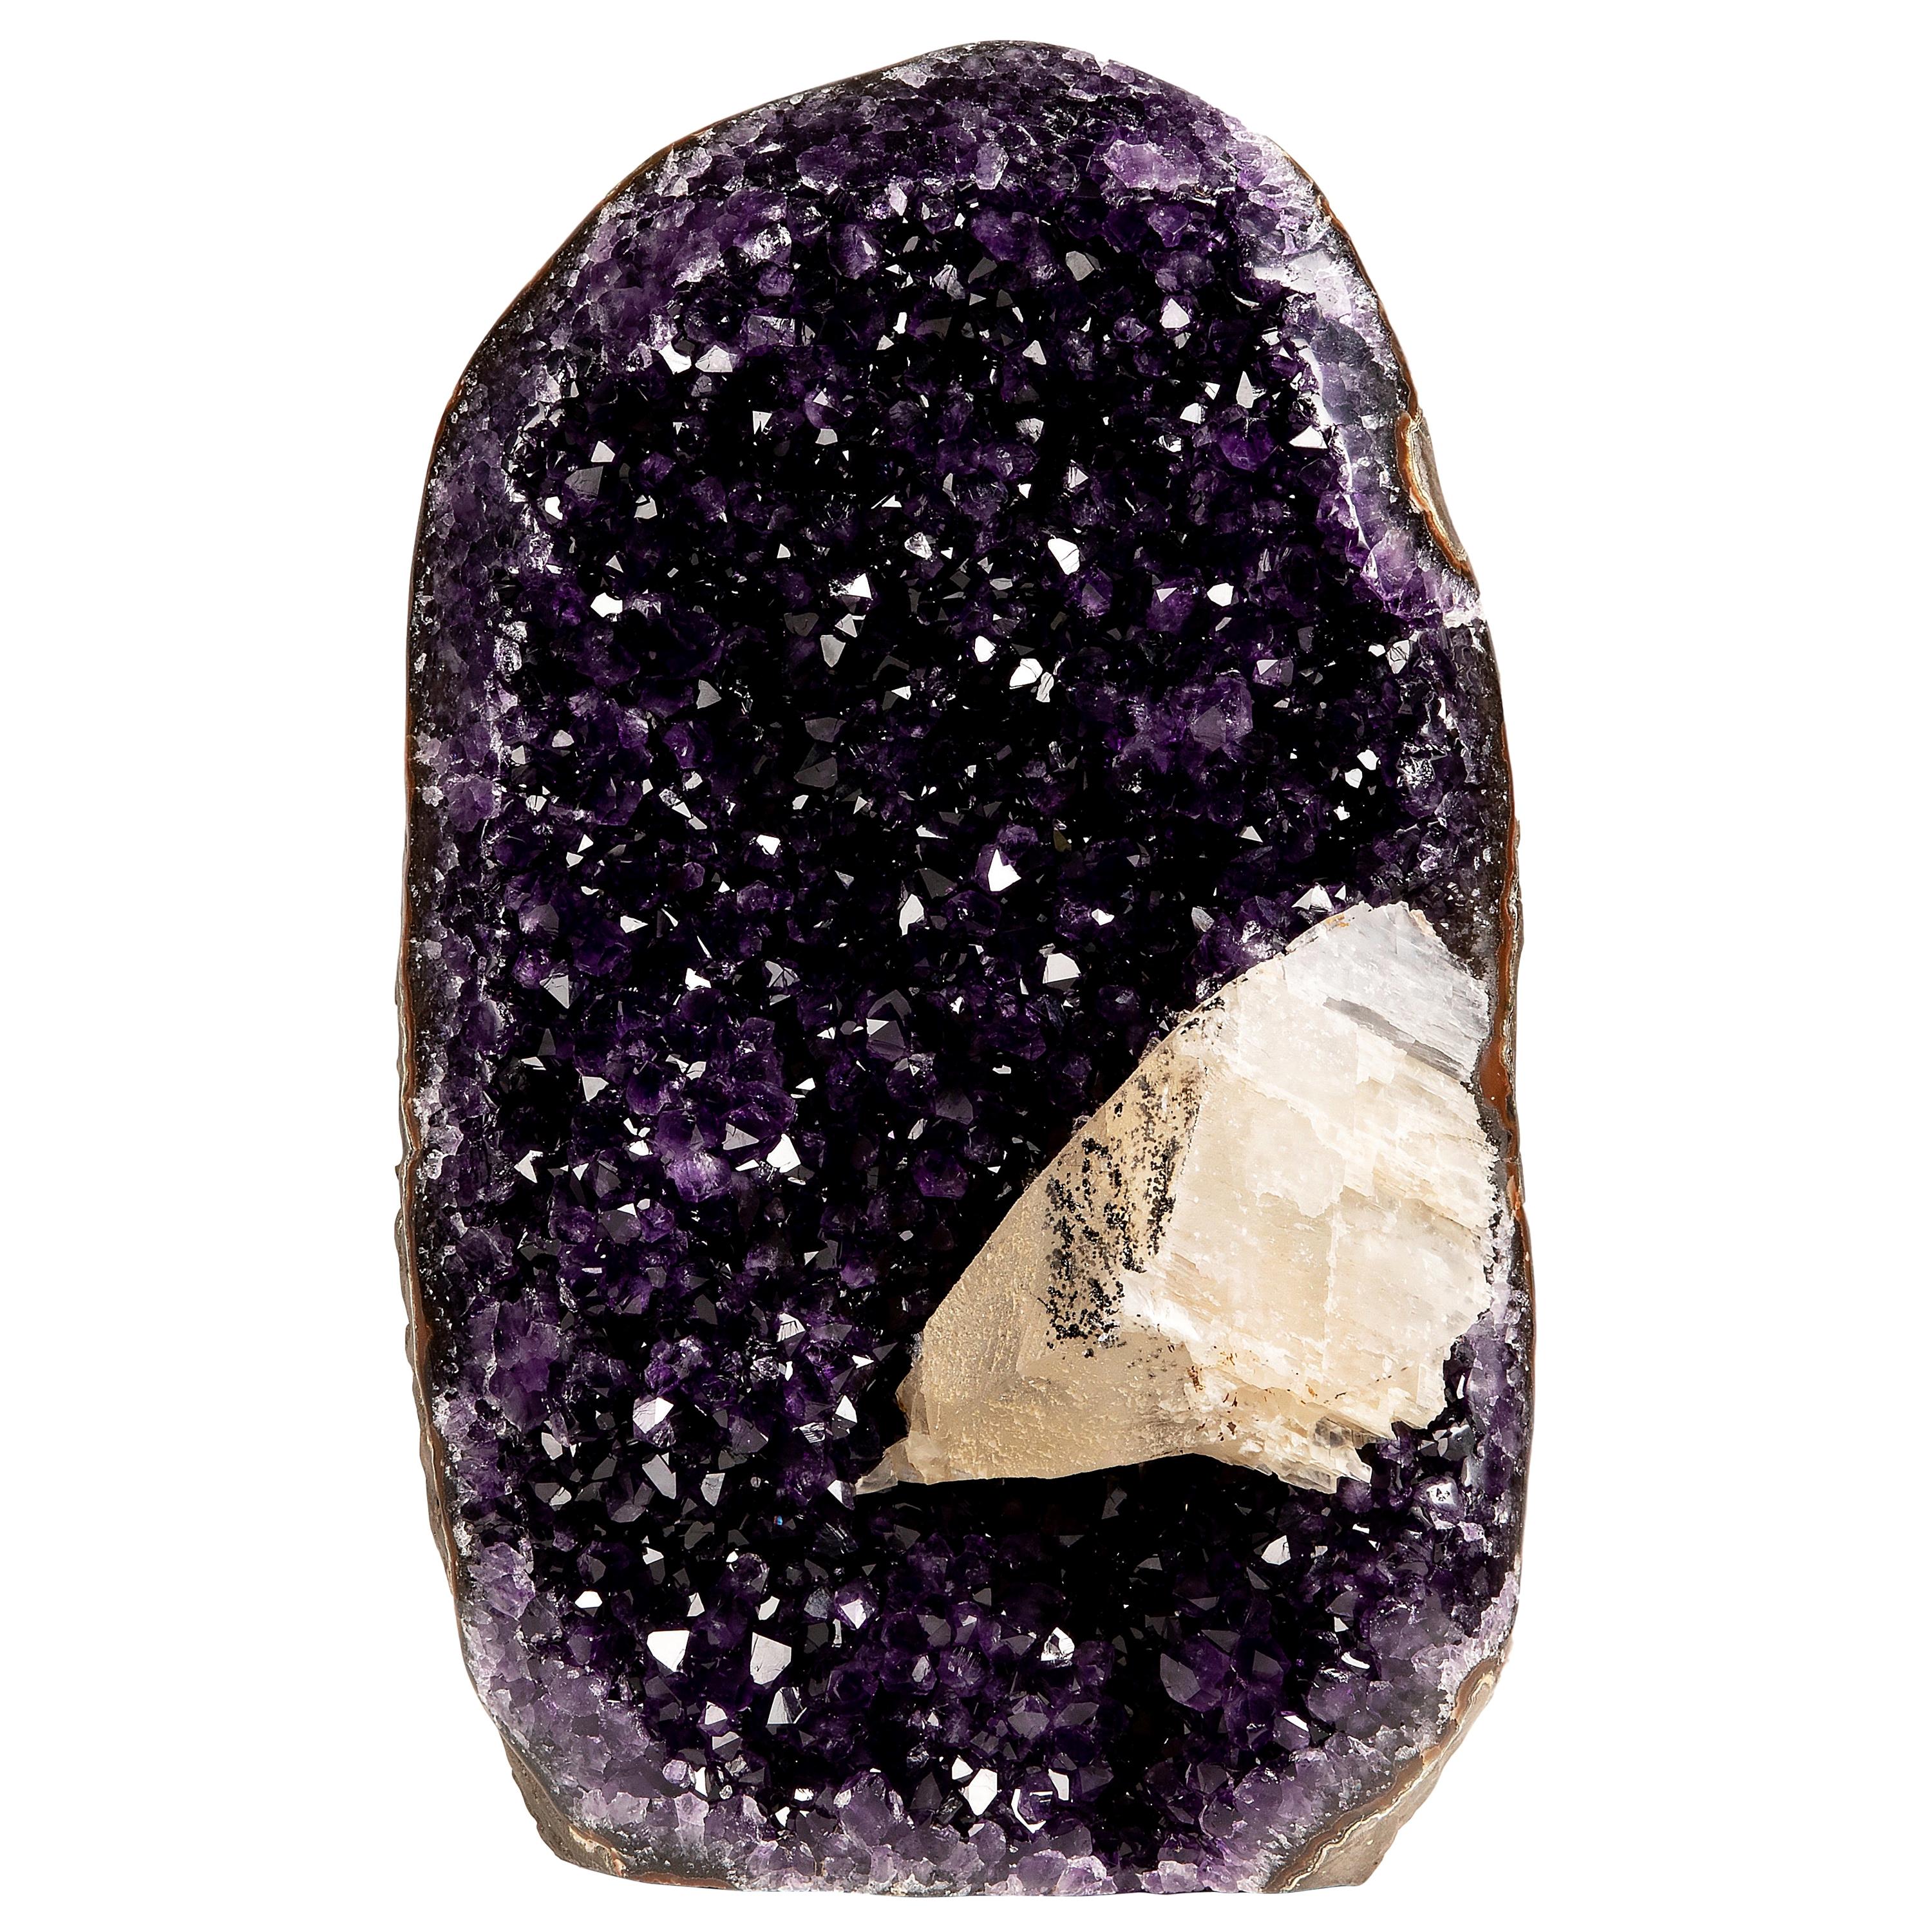 Améthyste violette profonde de haute qualité avec calcite entourée de quartz et de hématite